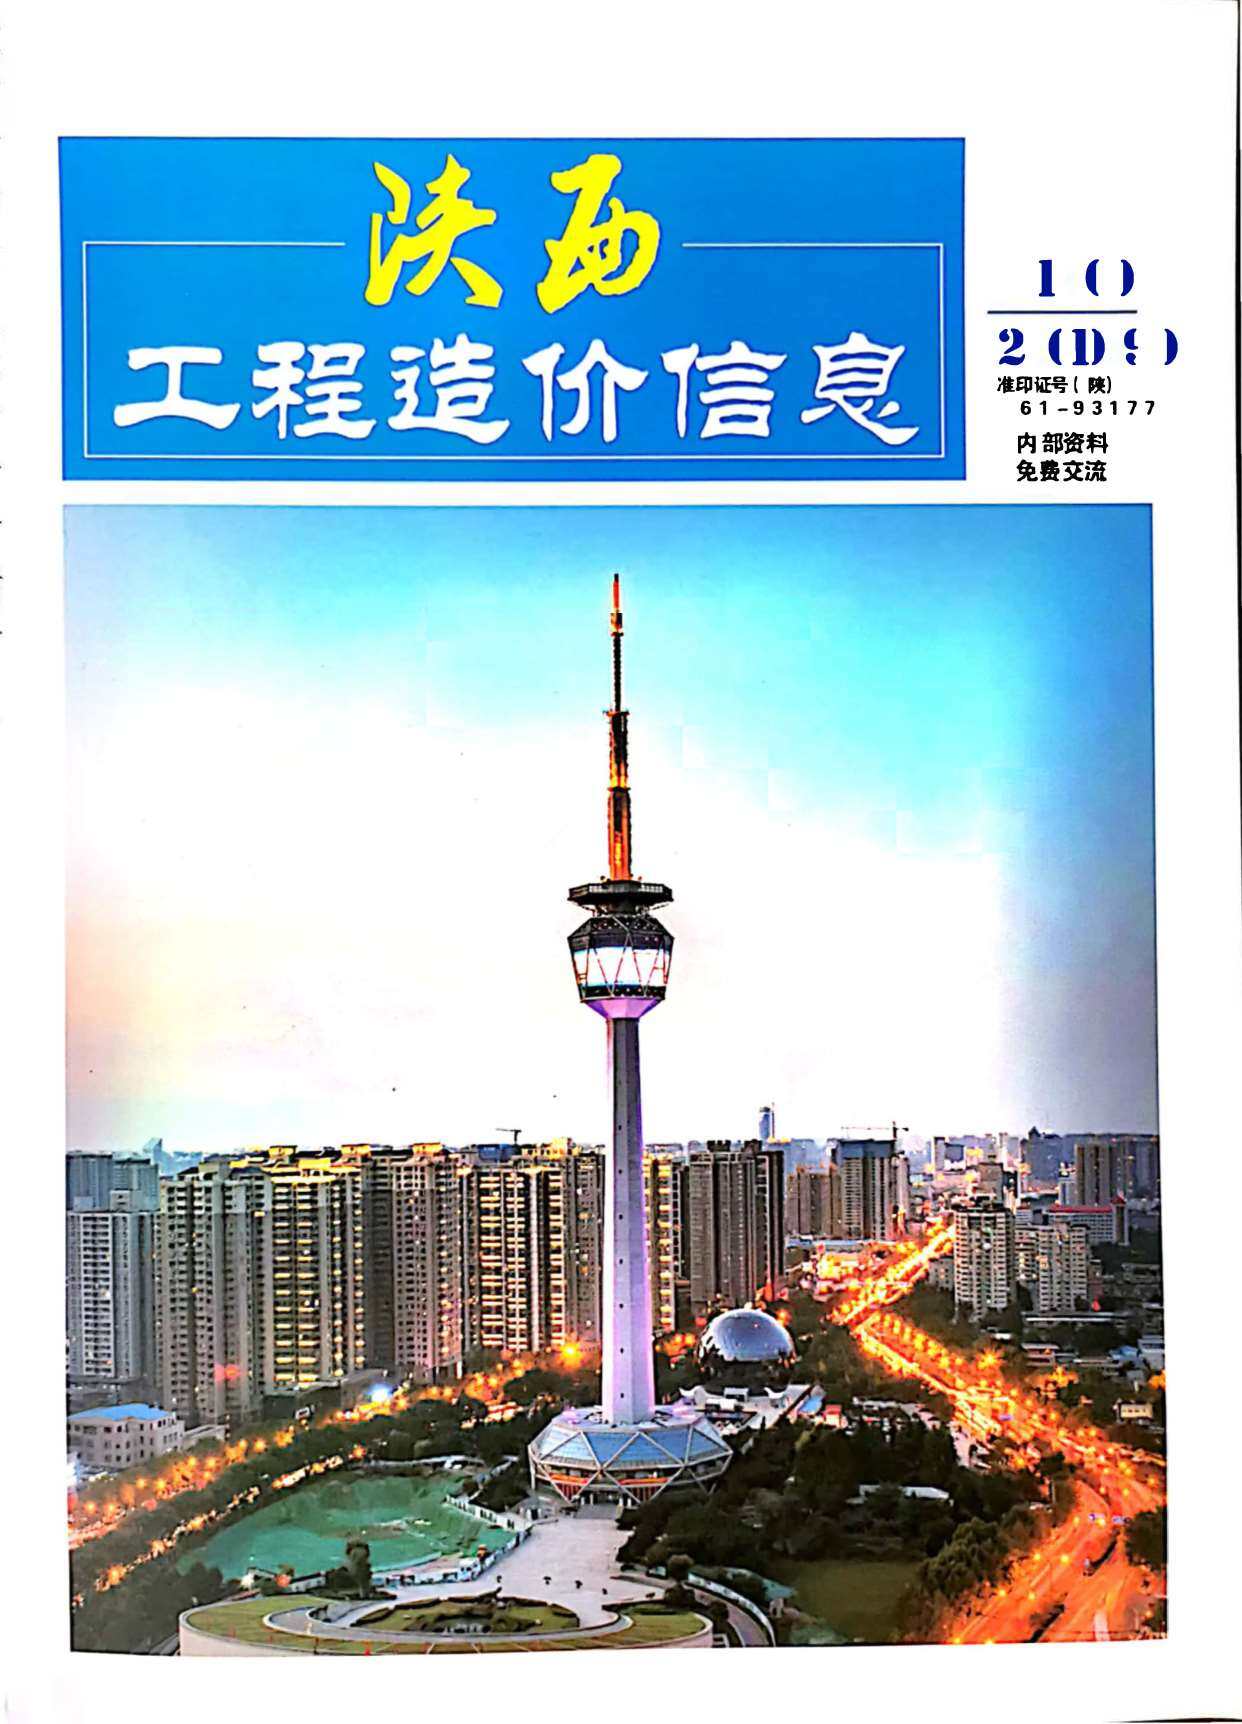 陕西省2019年10月工程造价信息期刊